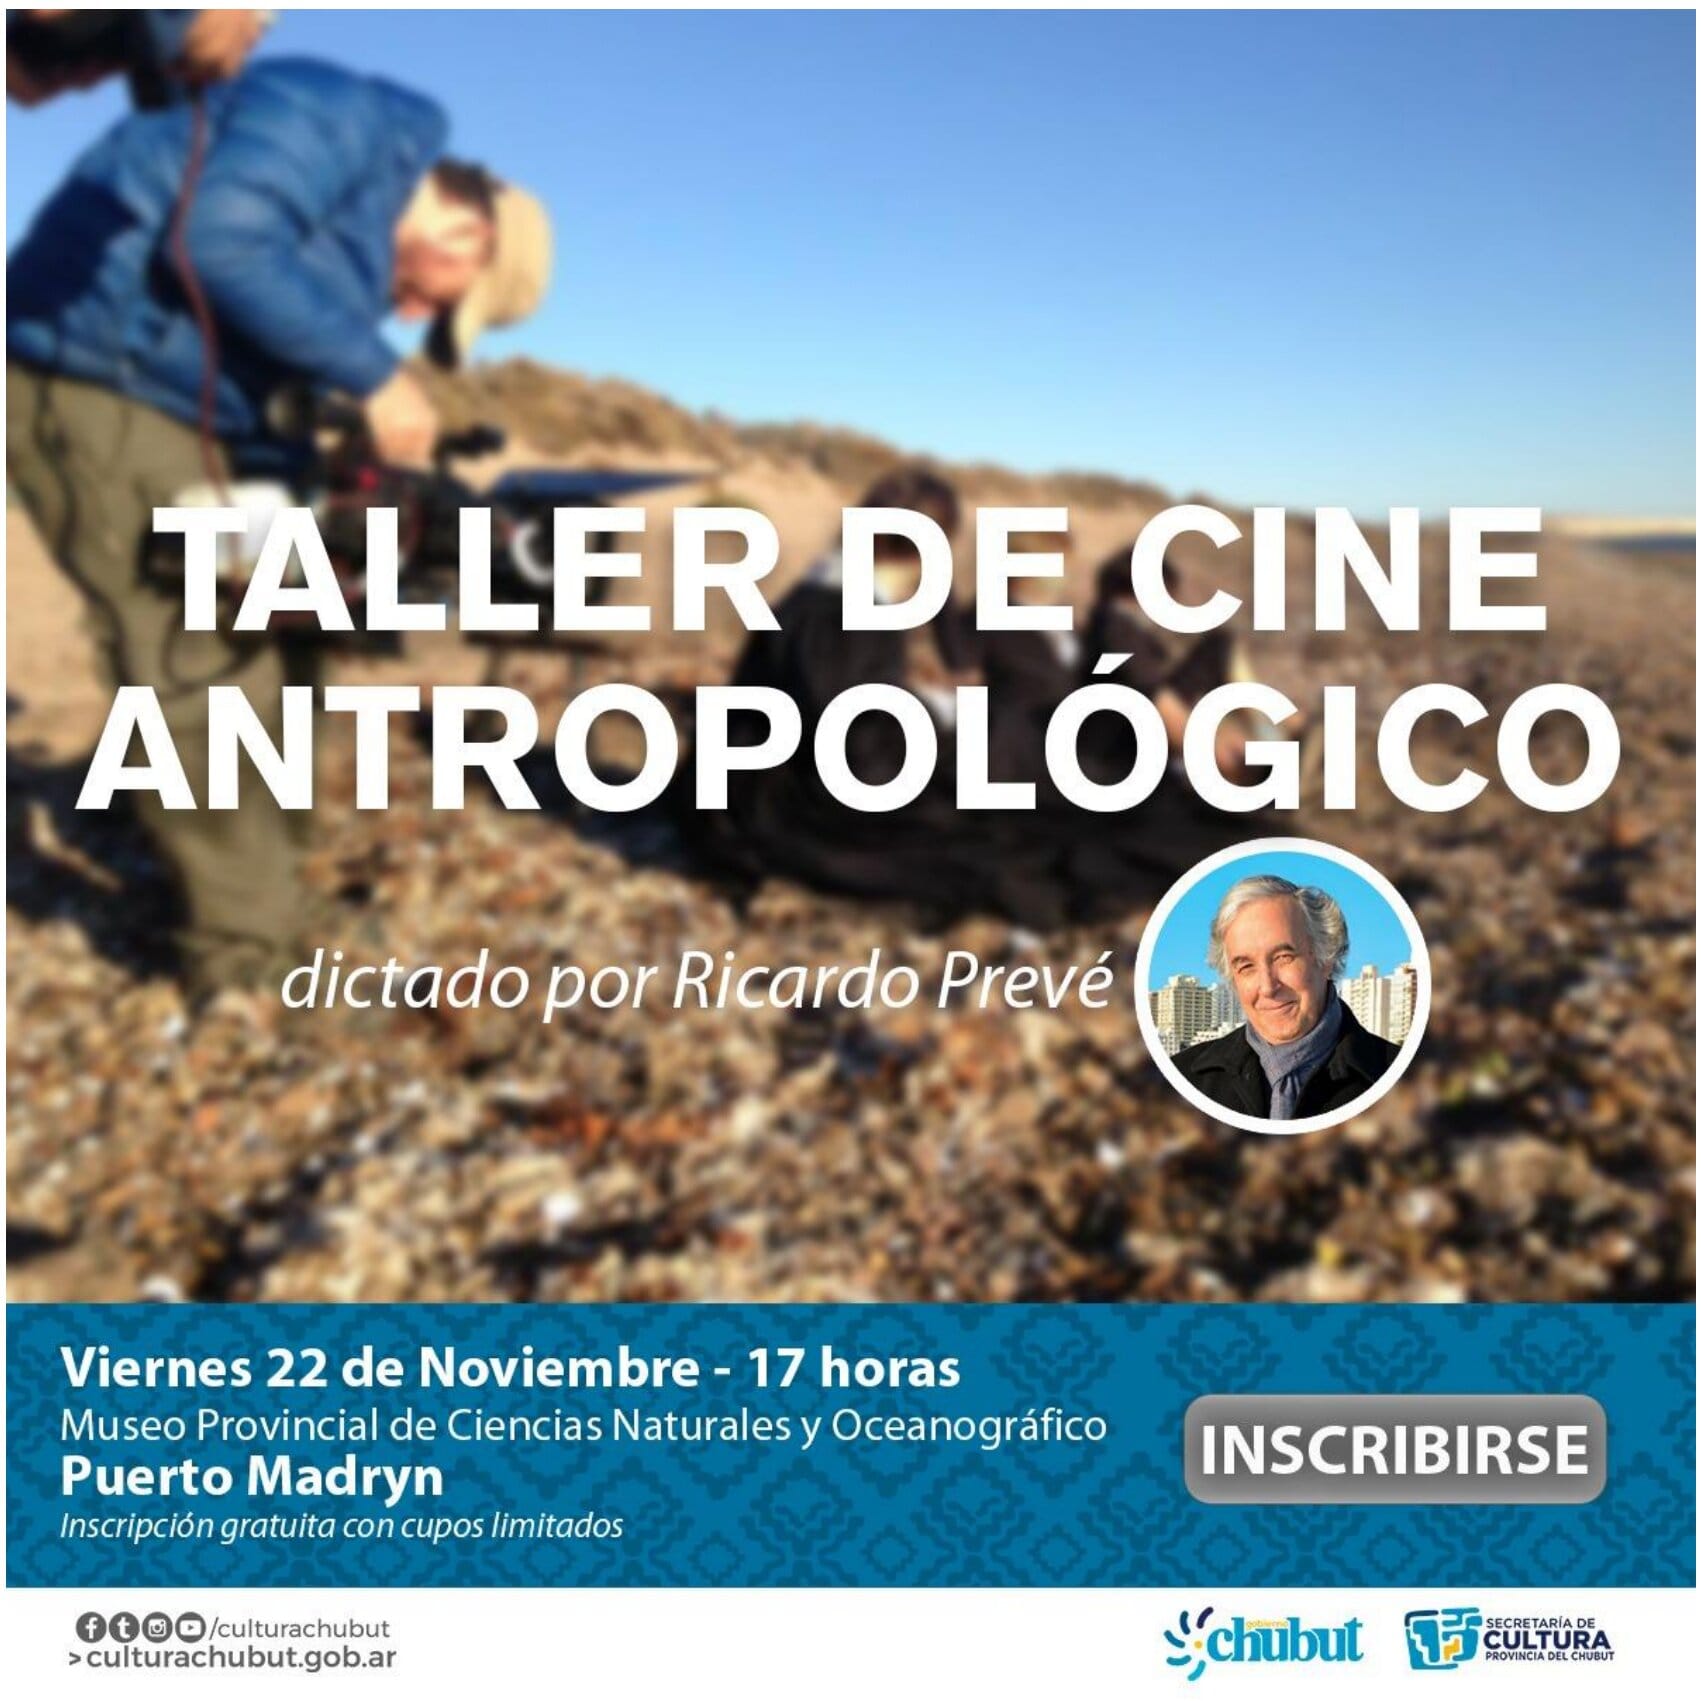 Se realizará un taller de Cine Antropológico en Puerto Madryn